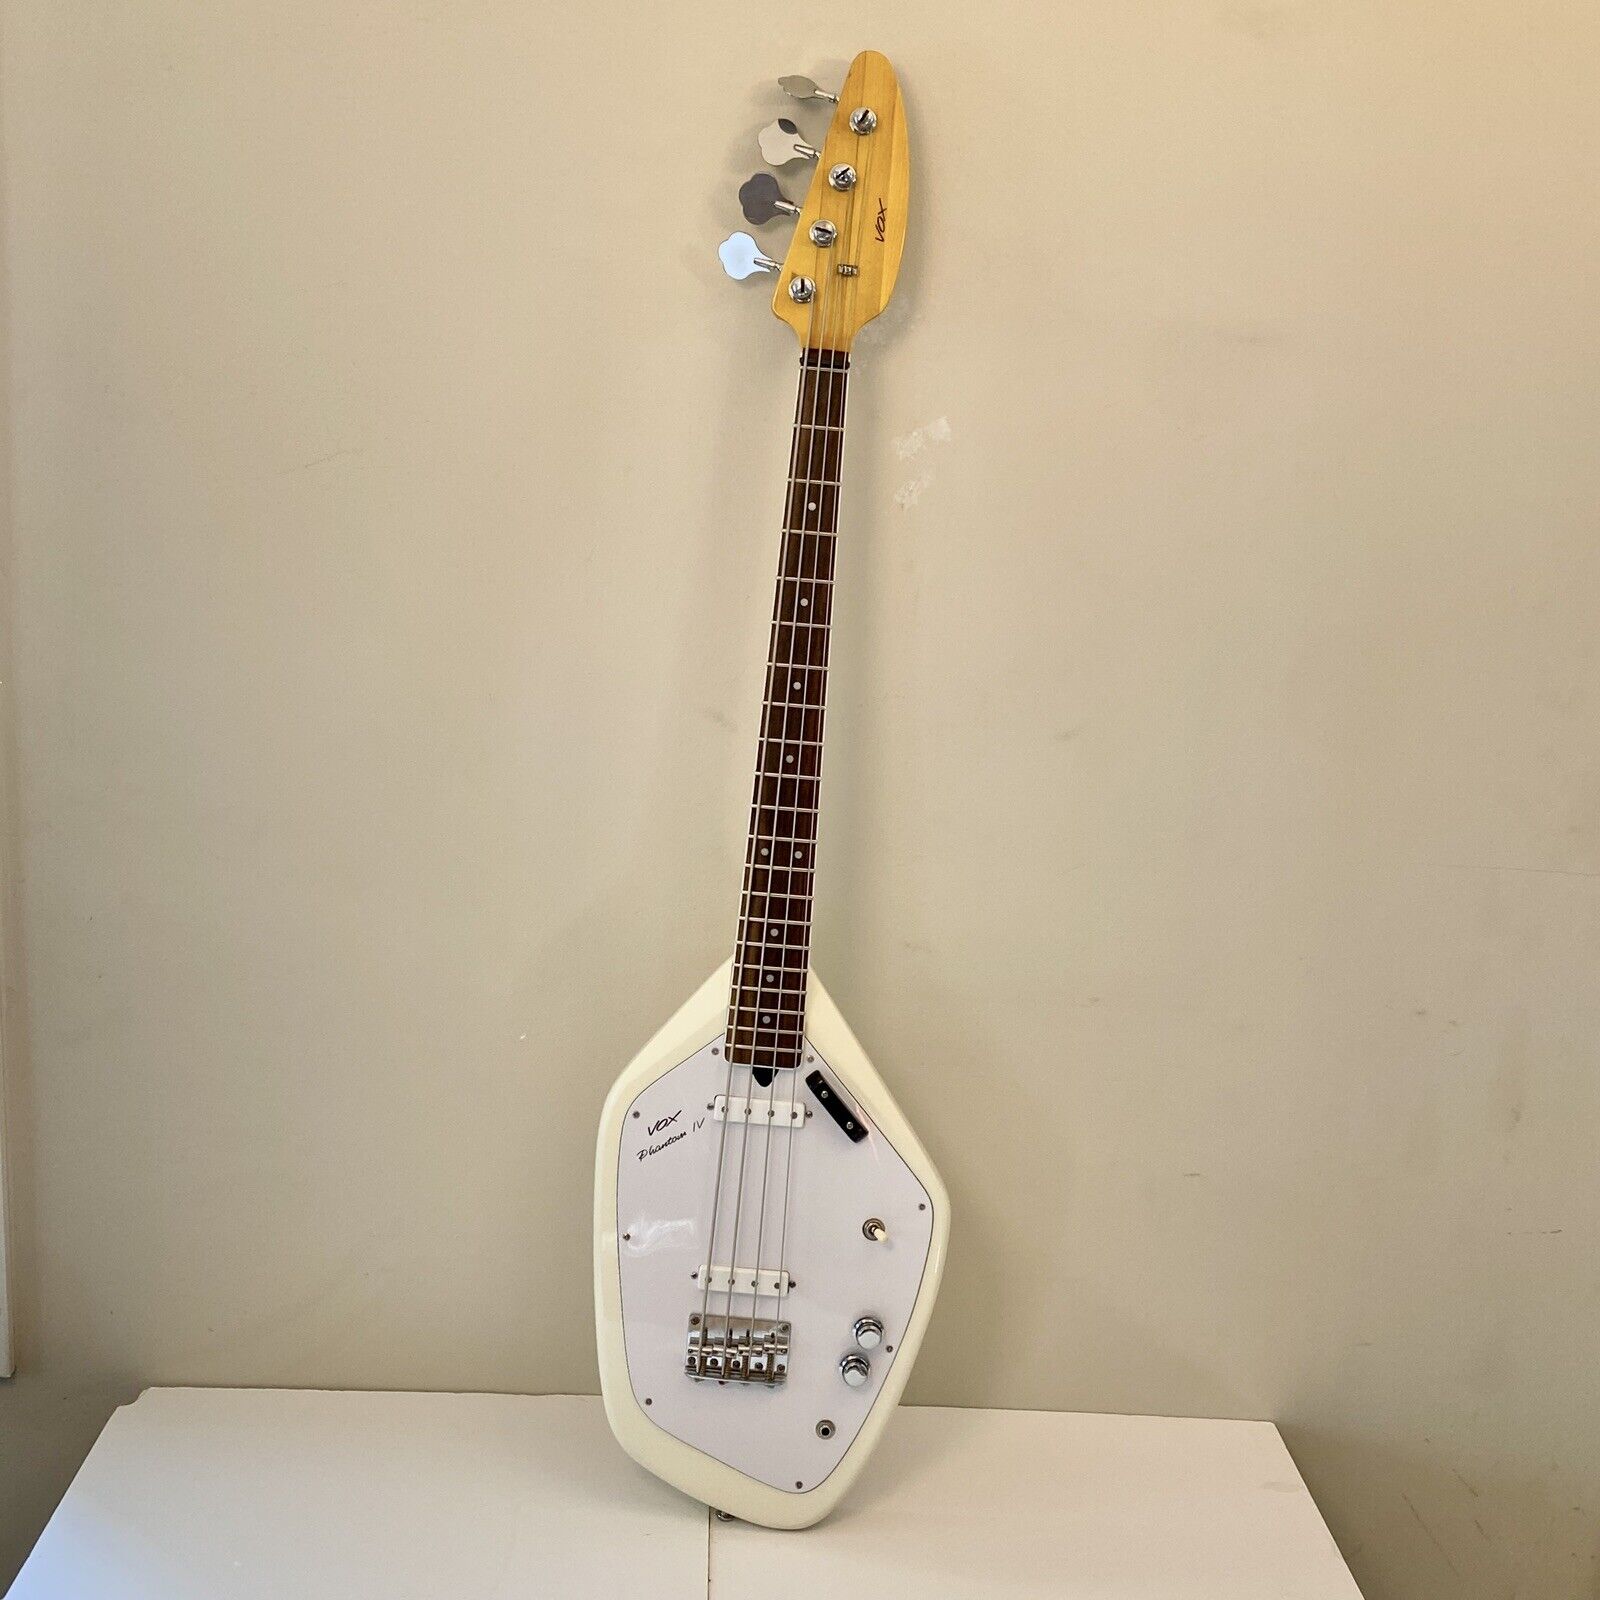 Vox Phantom Iv Bass Guitar 60's Vintage Reissue Original Specs Short Scale Neck